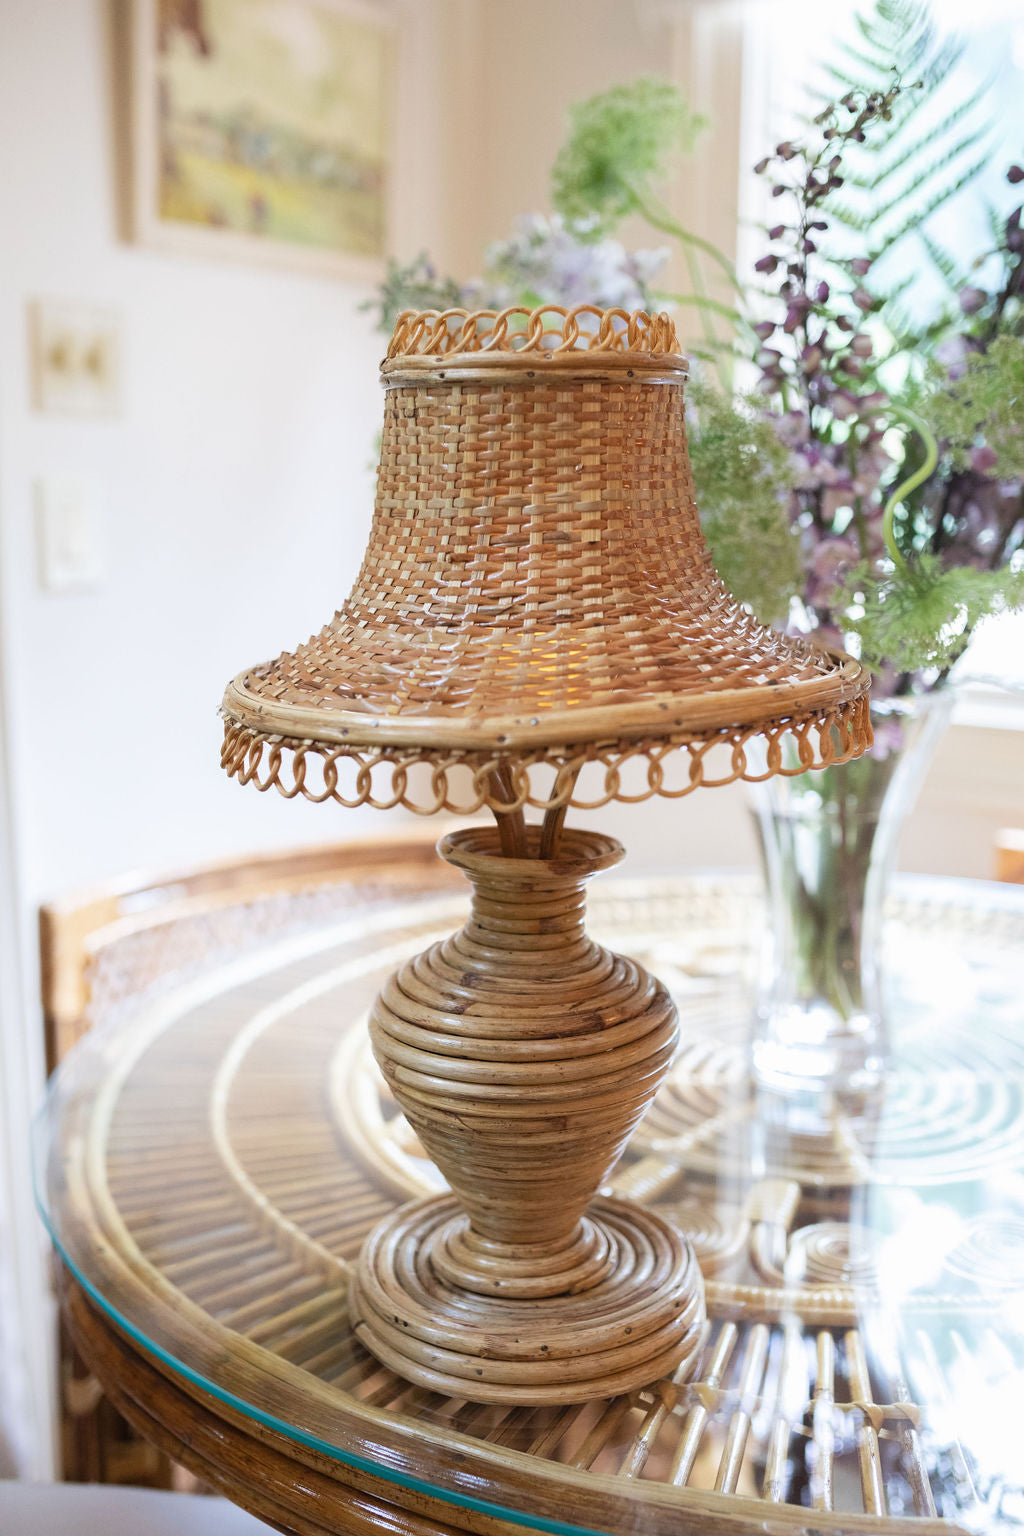 Cordless DIY Mini Lamp Using a Thrifted Terracotta Vase - Bless'er